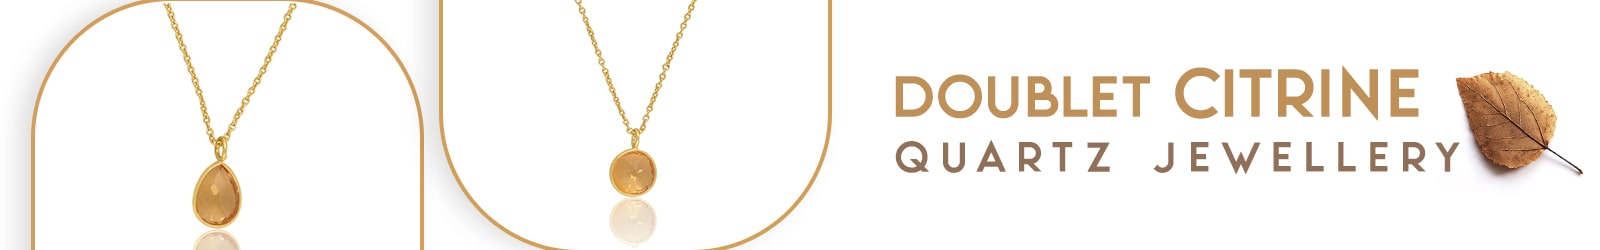 Silver Doublet Citrine Quartz Jewelry Wholesale Supplier